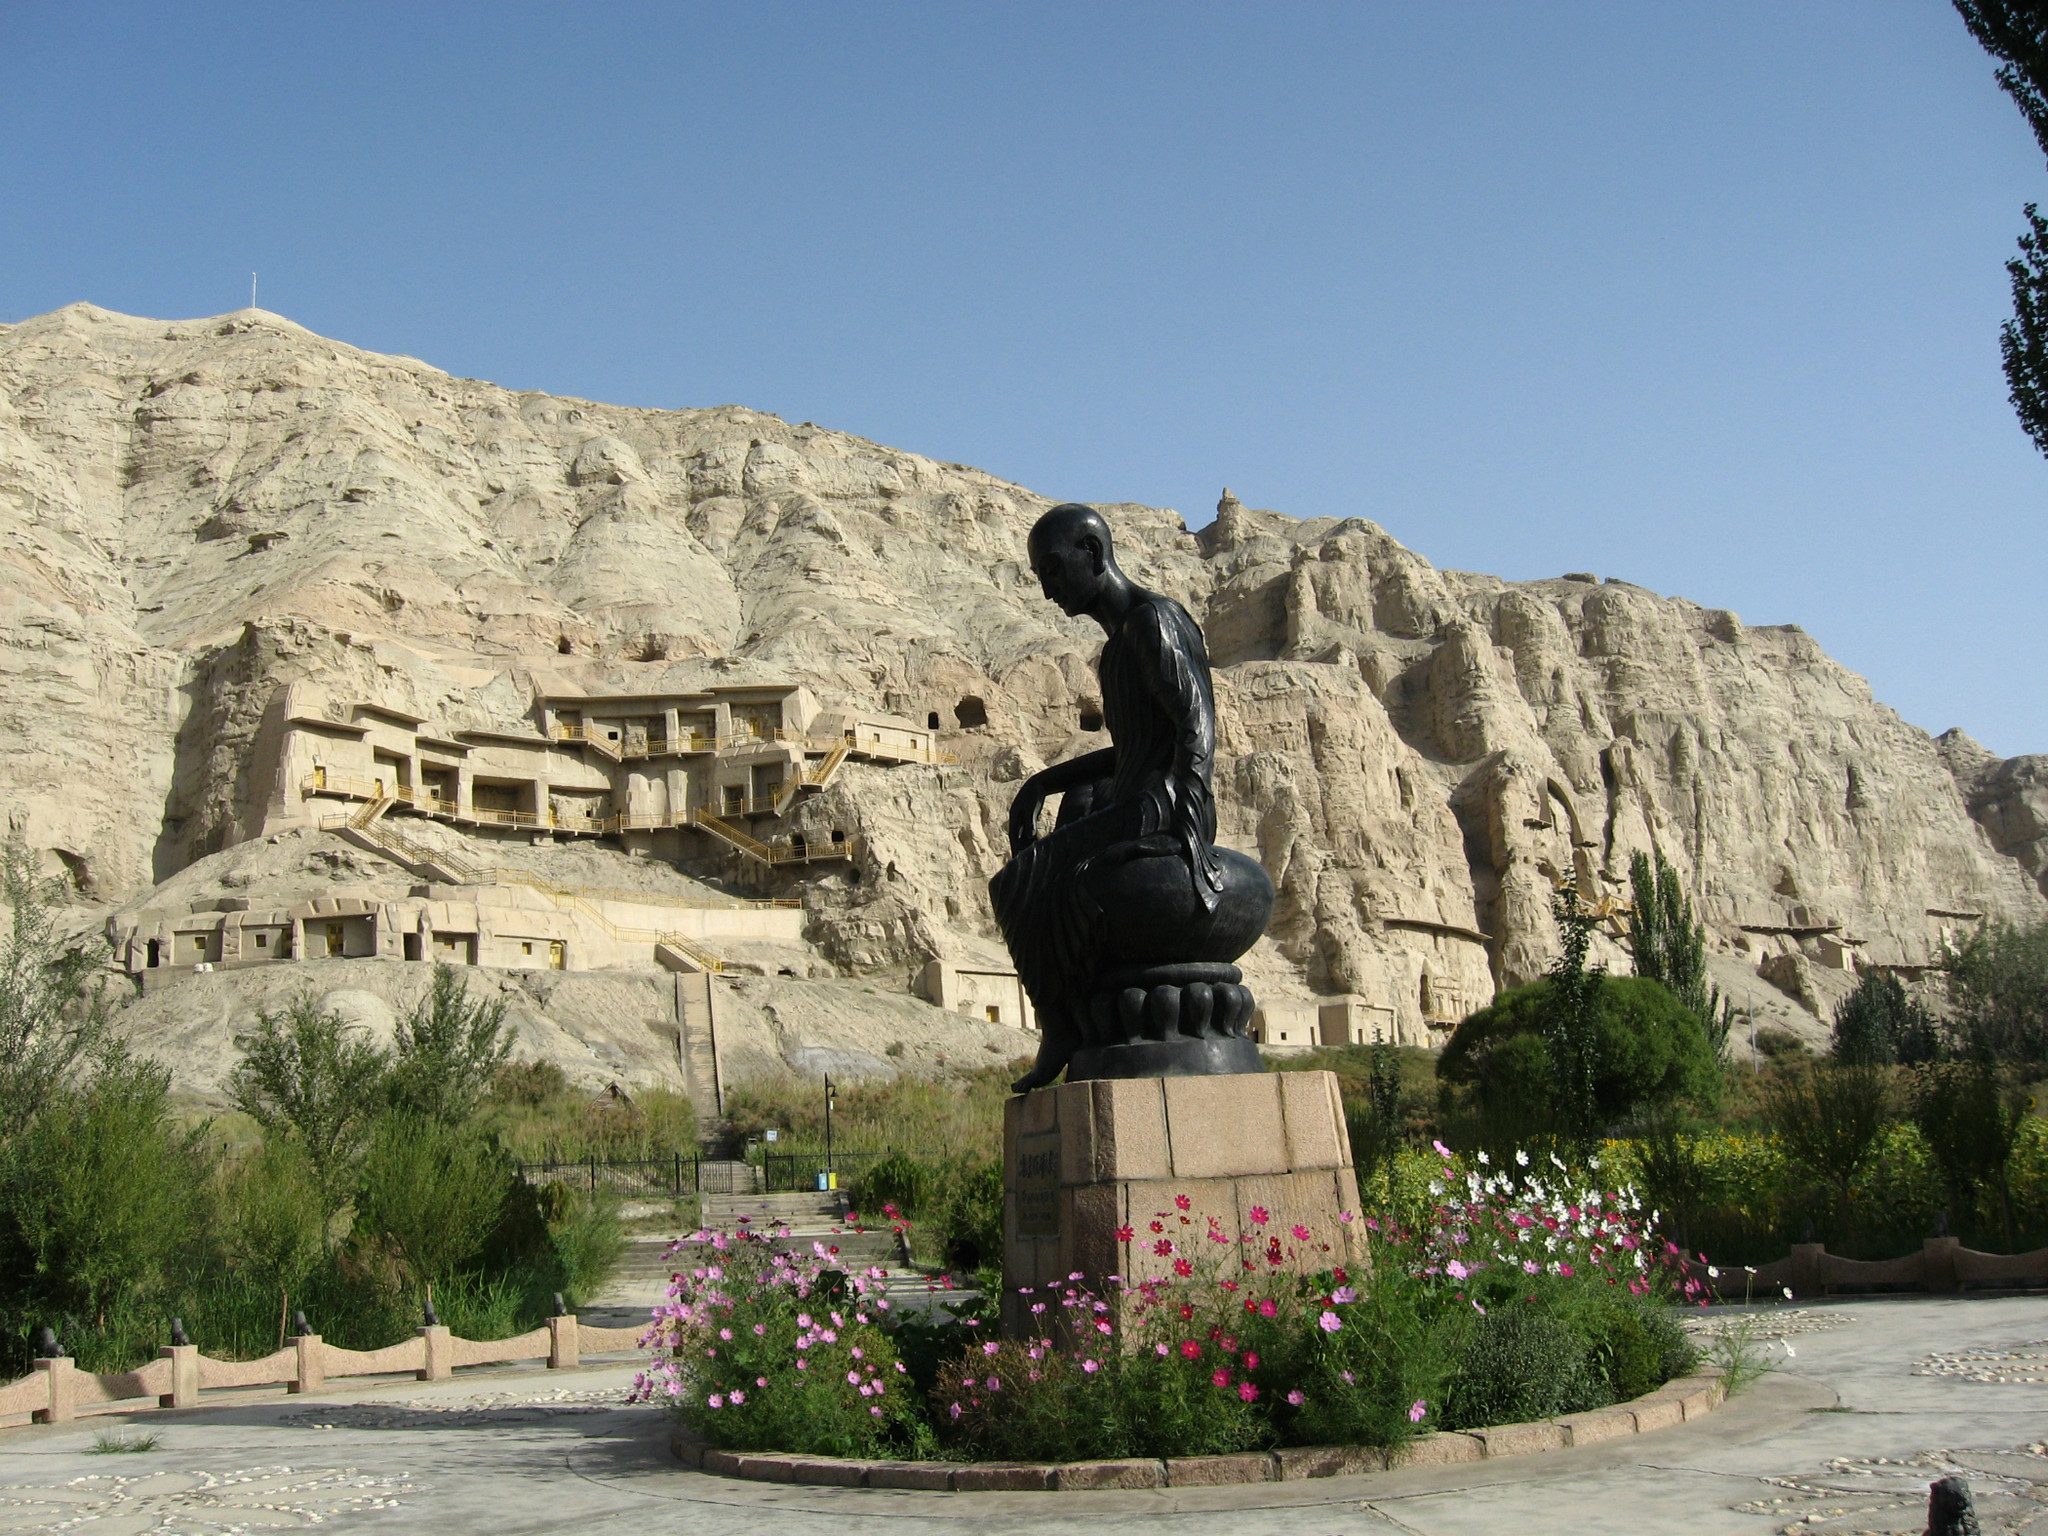 从北疆到南疆，这条自驾线路既能让你看尽风景又能领略风情